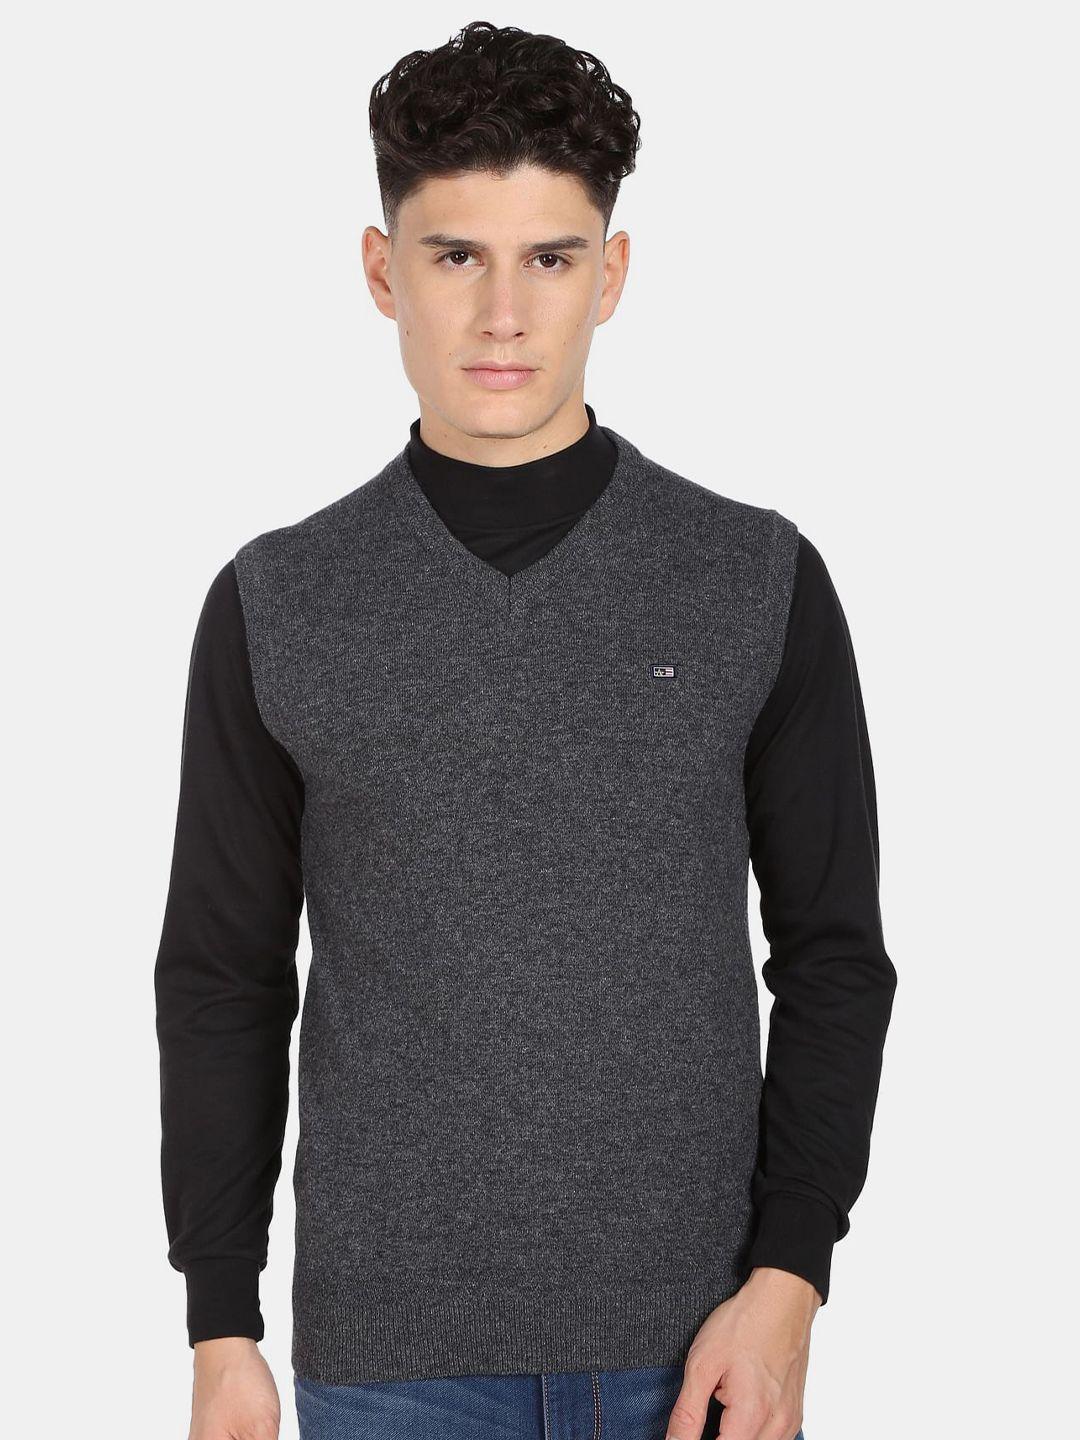 arrow sport men v-neck sleeveless sweater vest